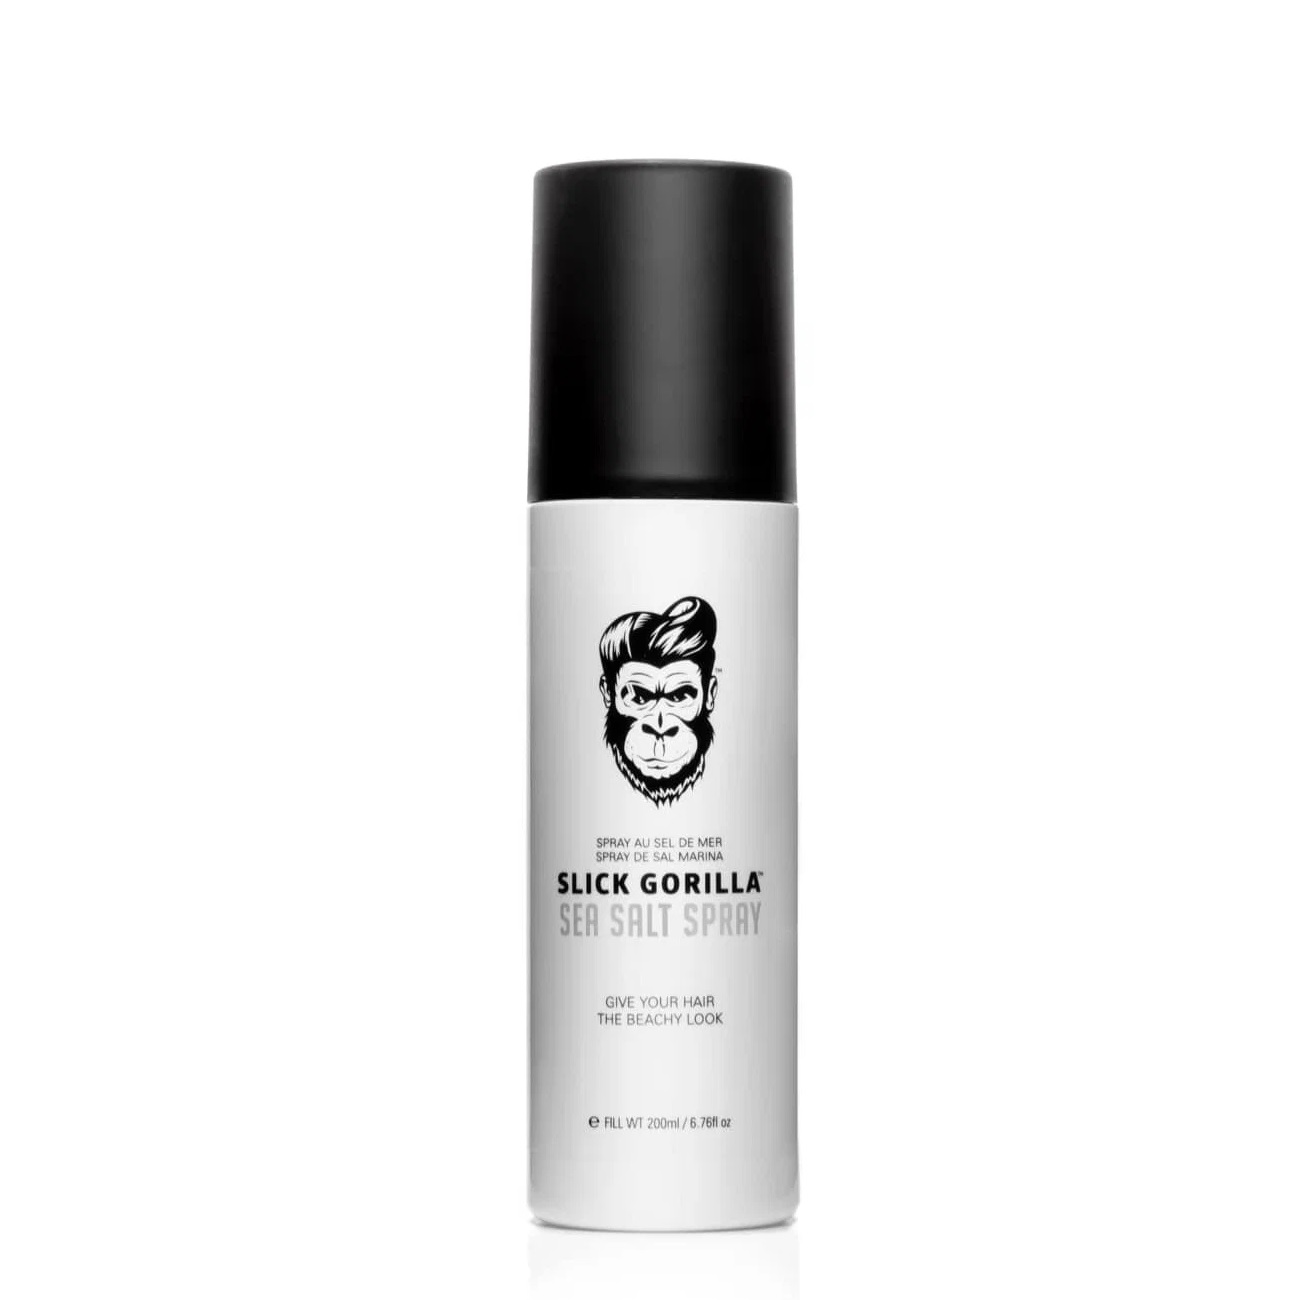 SLICK GORILLA, Соляной спрей для волос Sea Salt Spray, 200 мл.